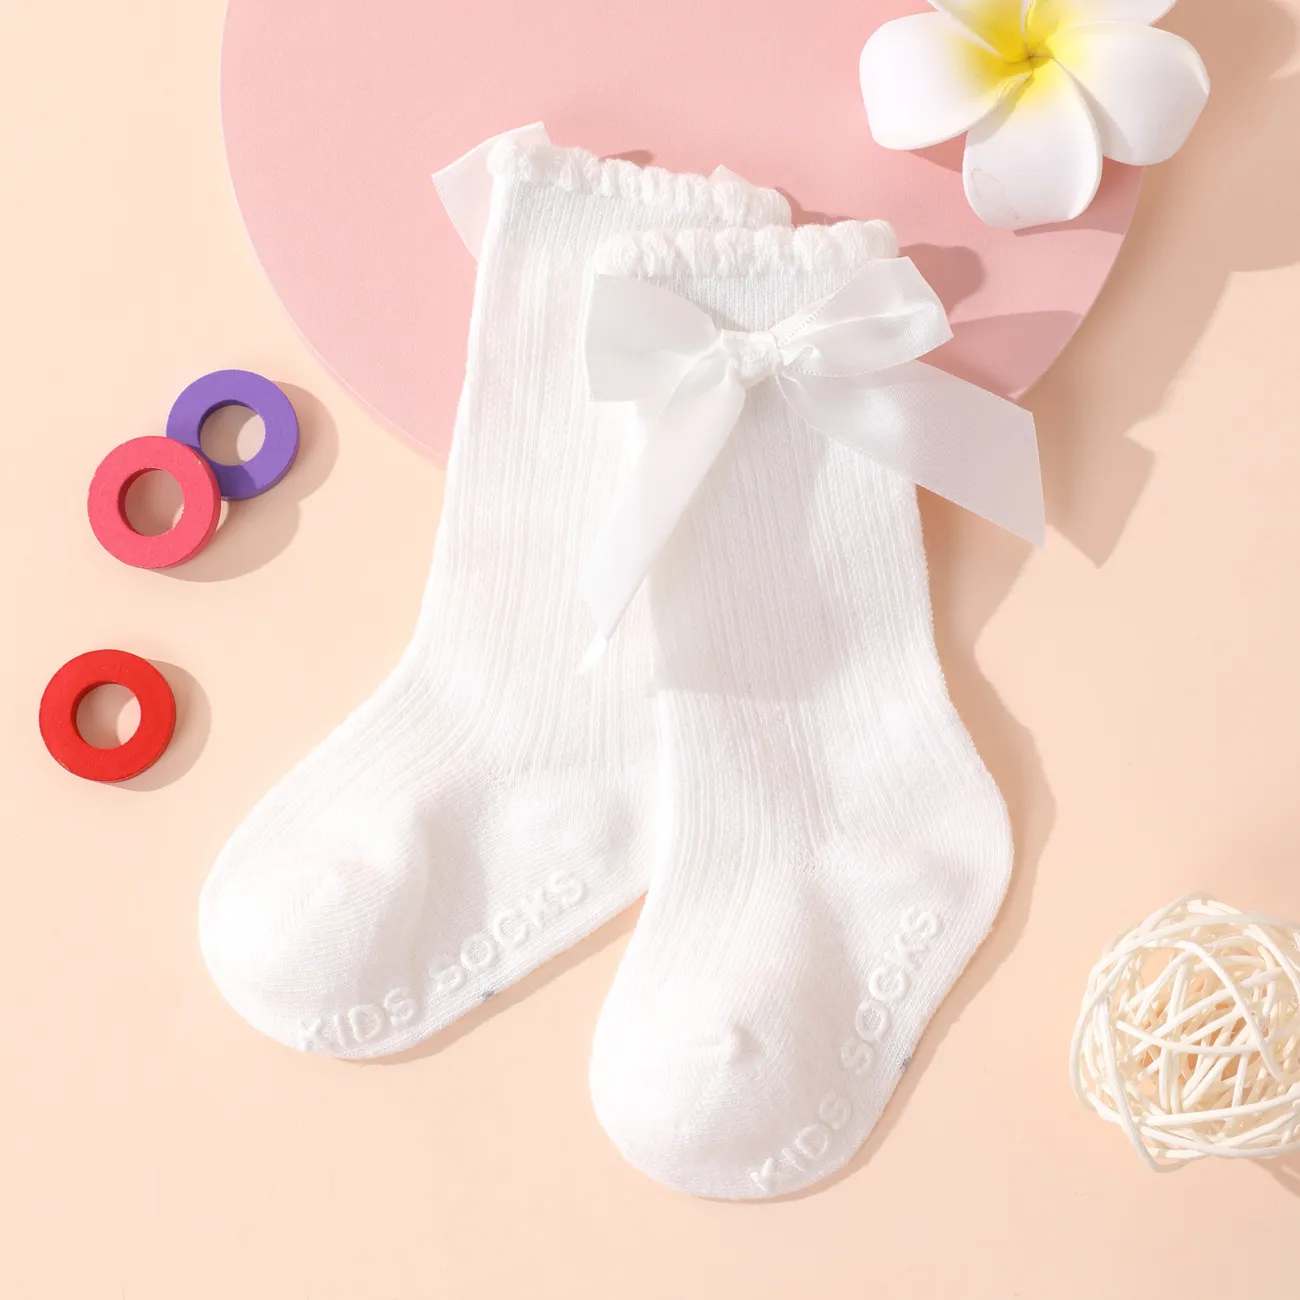 Chaussettes en tube de colle antidérapantes pour bébé/enfant en bas âge avec bordure froncée Blanc big image 1